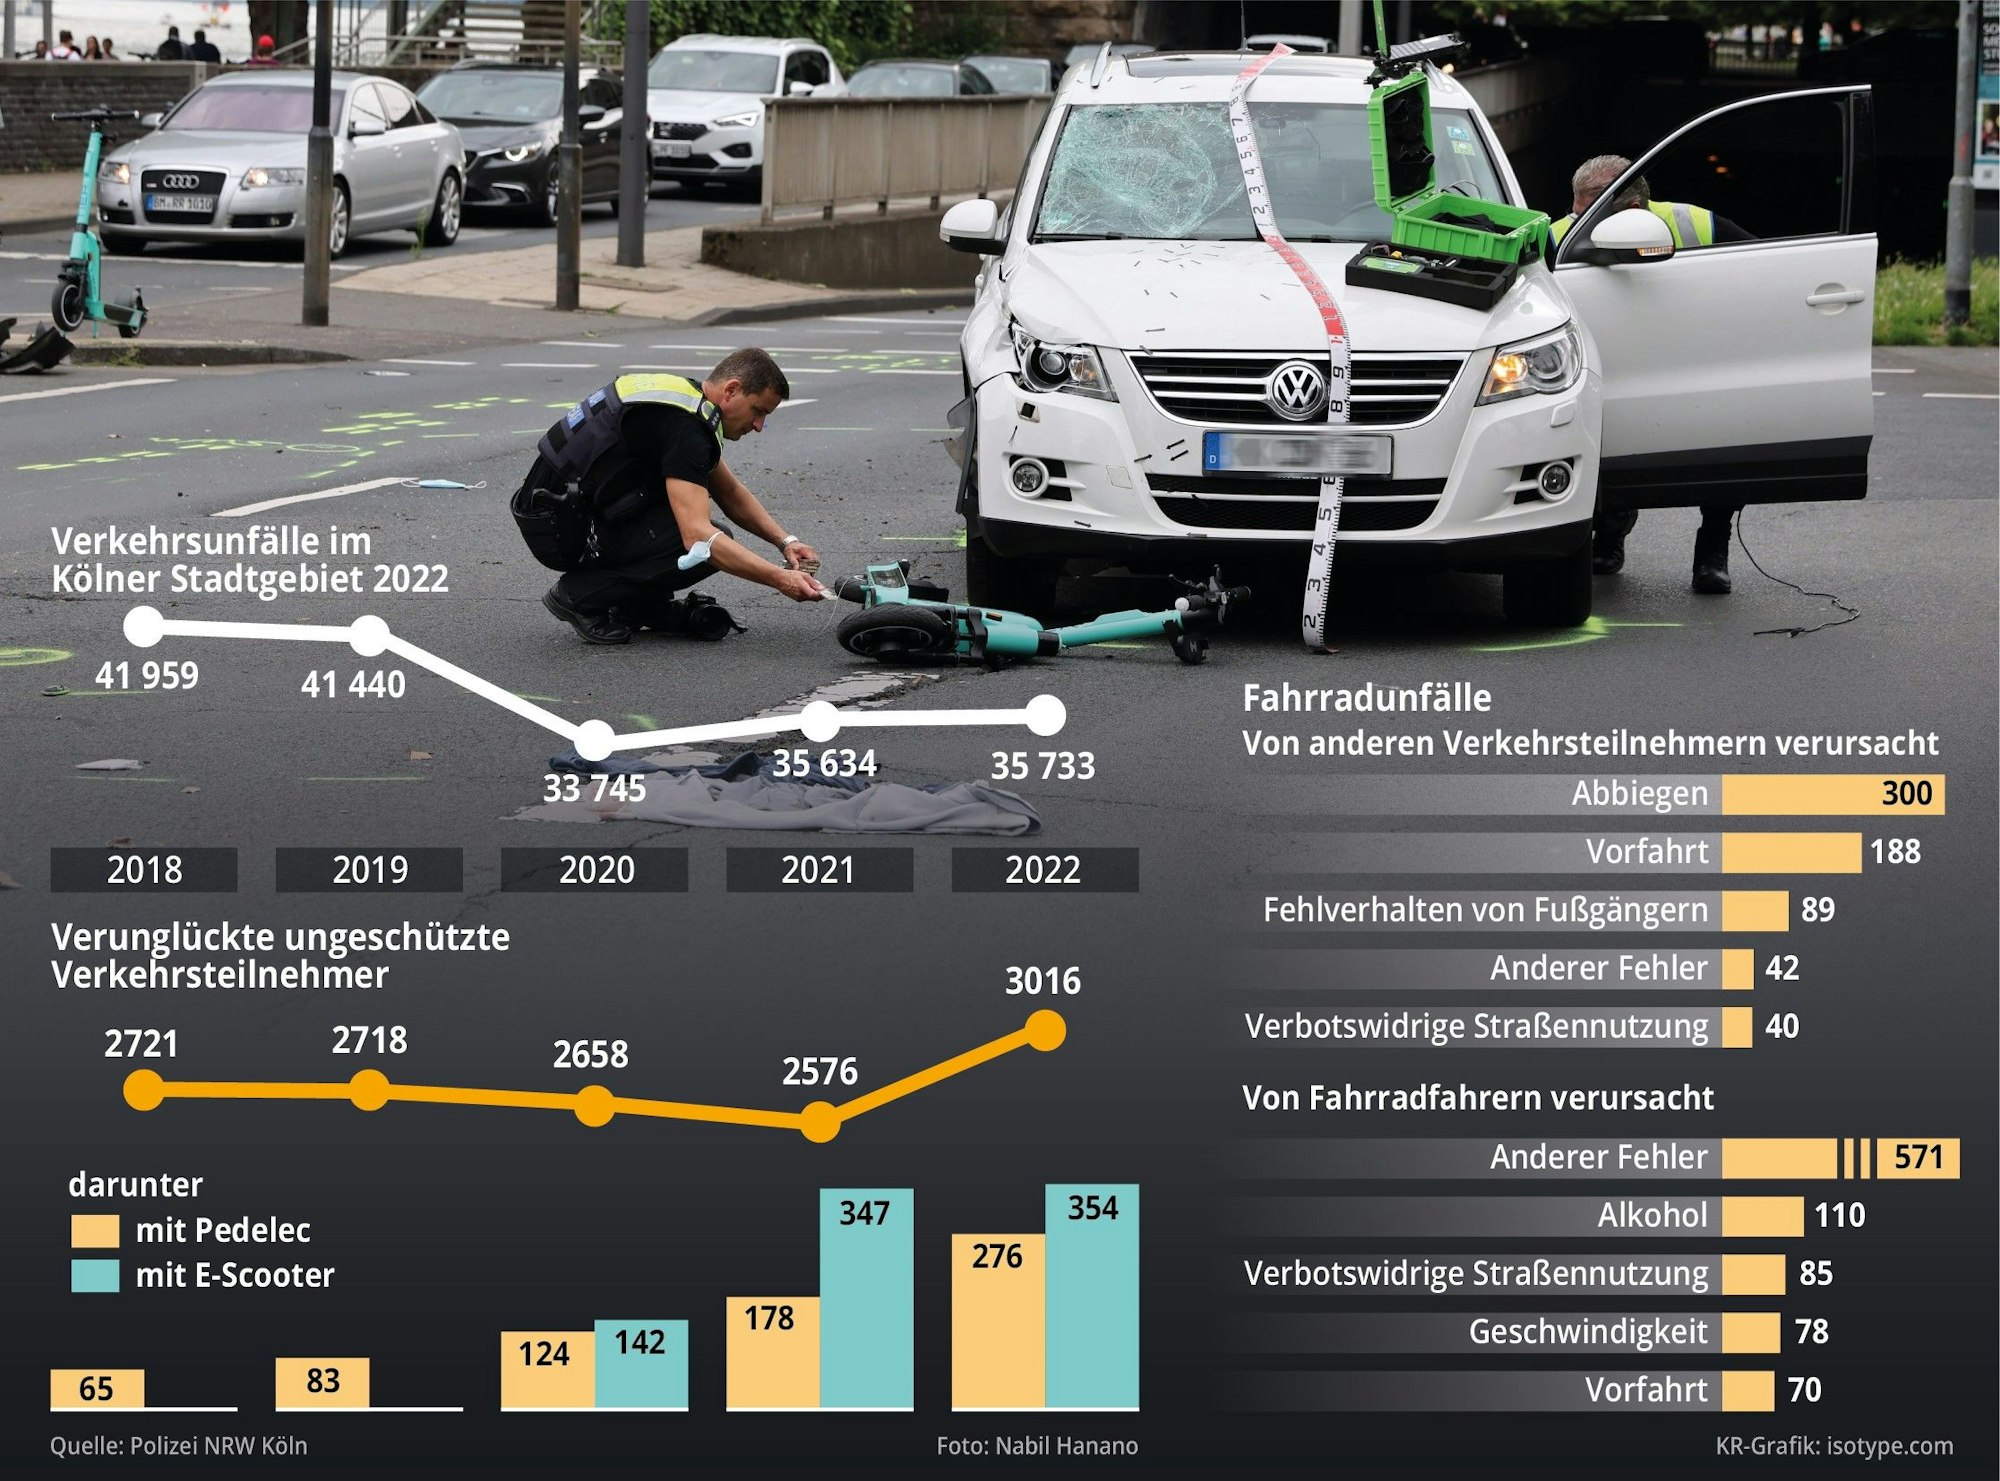 Grafik zu den Verkehrszahlen in Köln